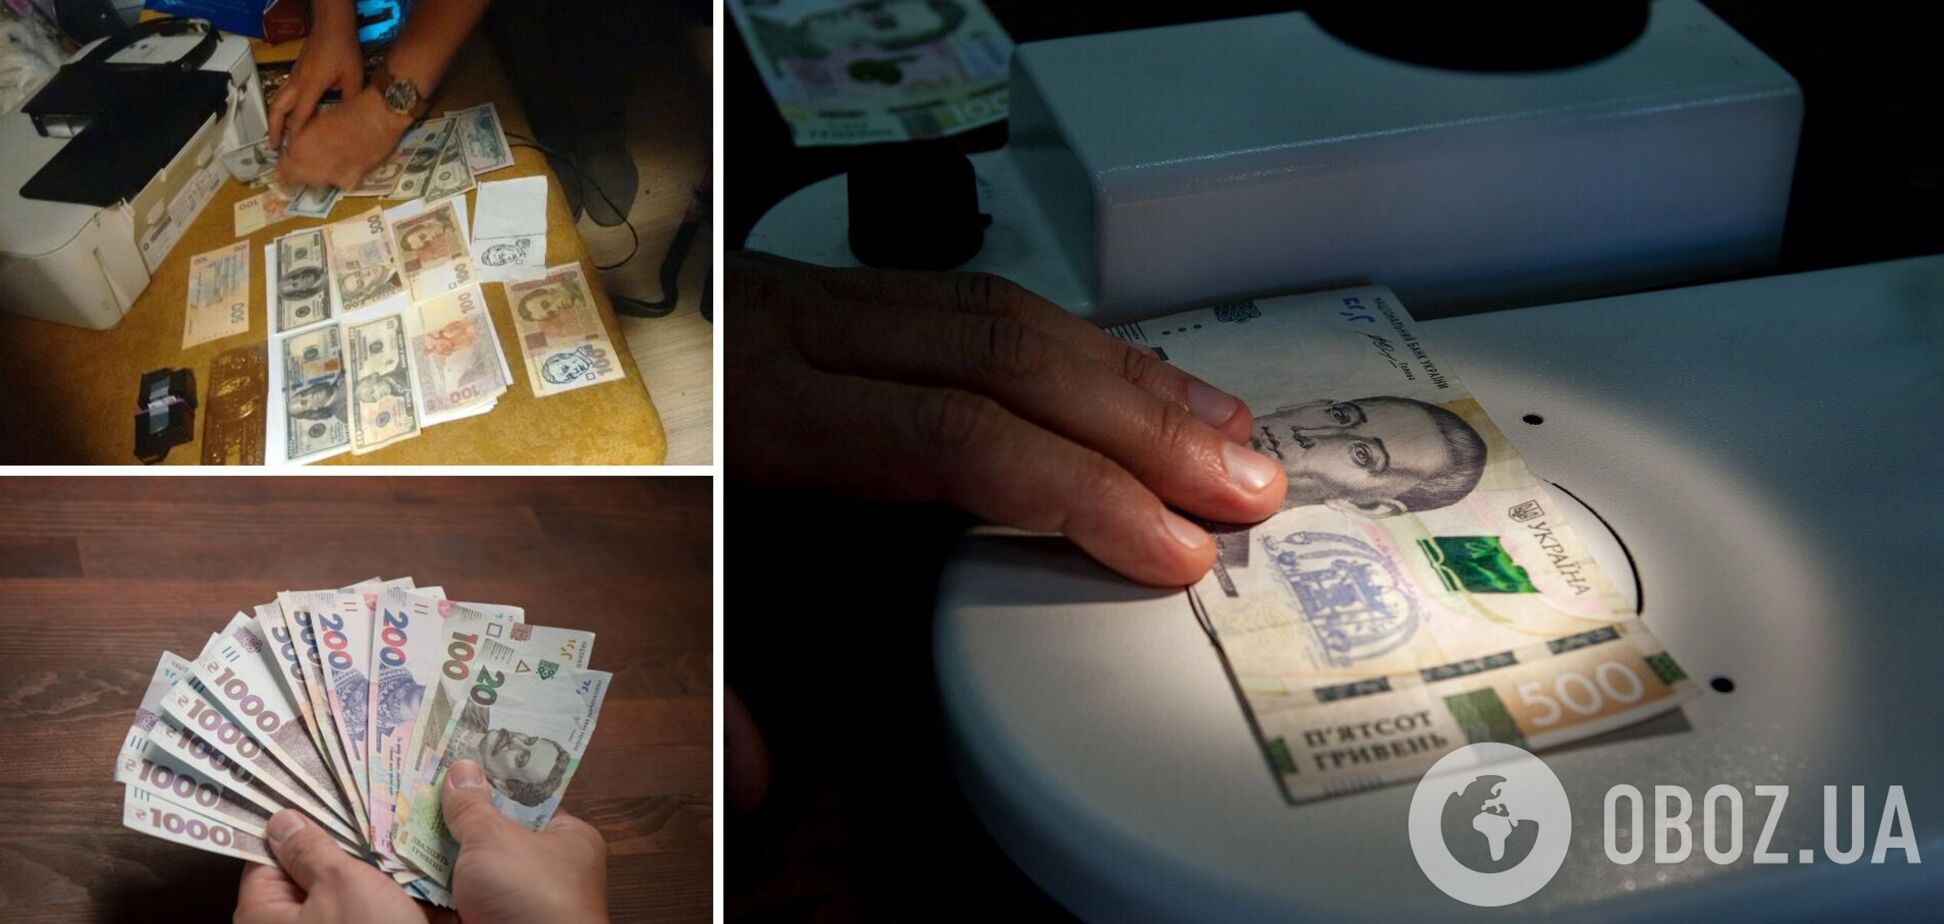 В Украине подделывают гривни, фальшивку тяжело отличить от настоящих купюр